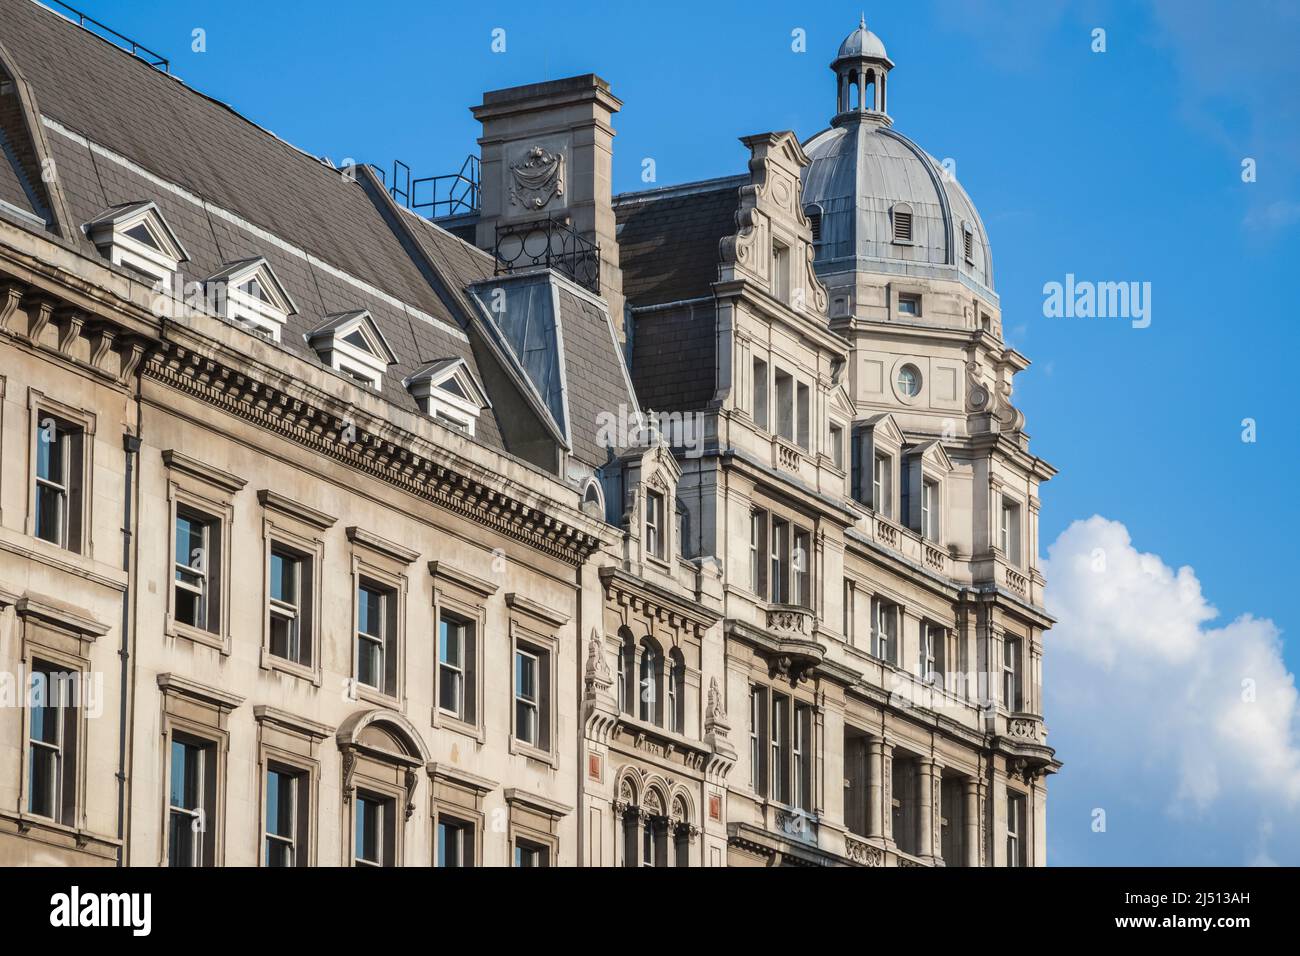 Un bâtiment d'architecture baroque édouardien avec pavillon en dôme situé sur le toit autour de la place du Parlement à Londres Banque D'Images